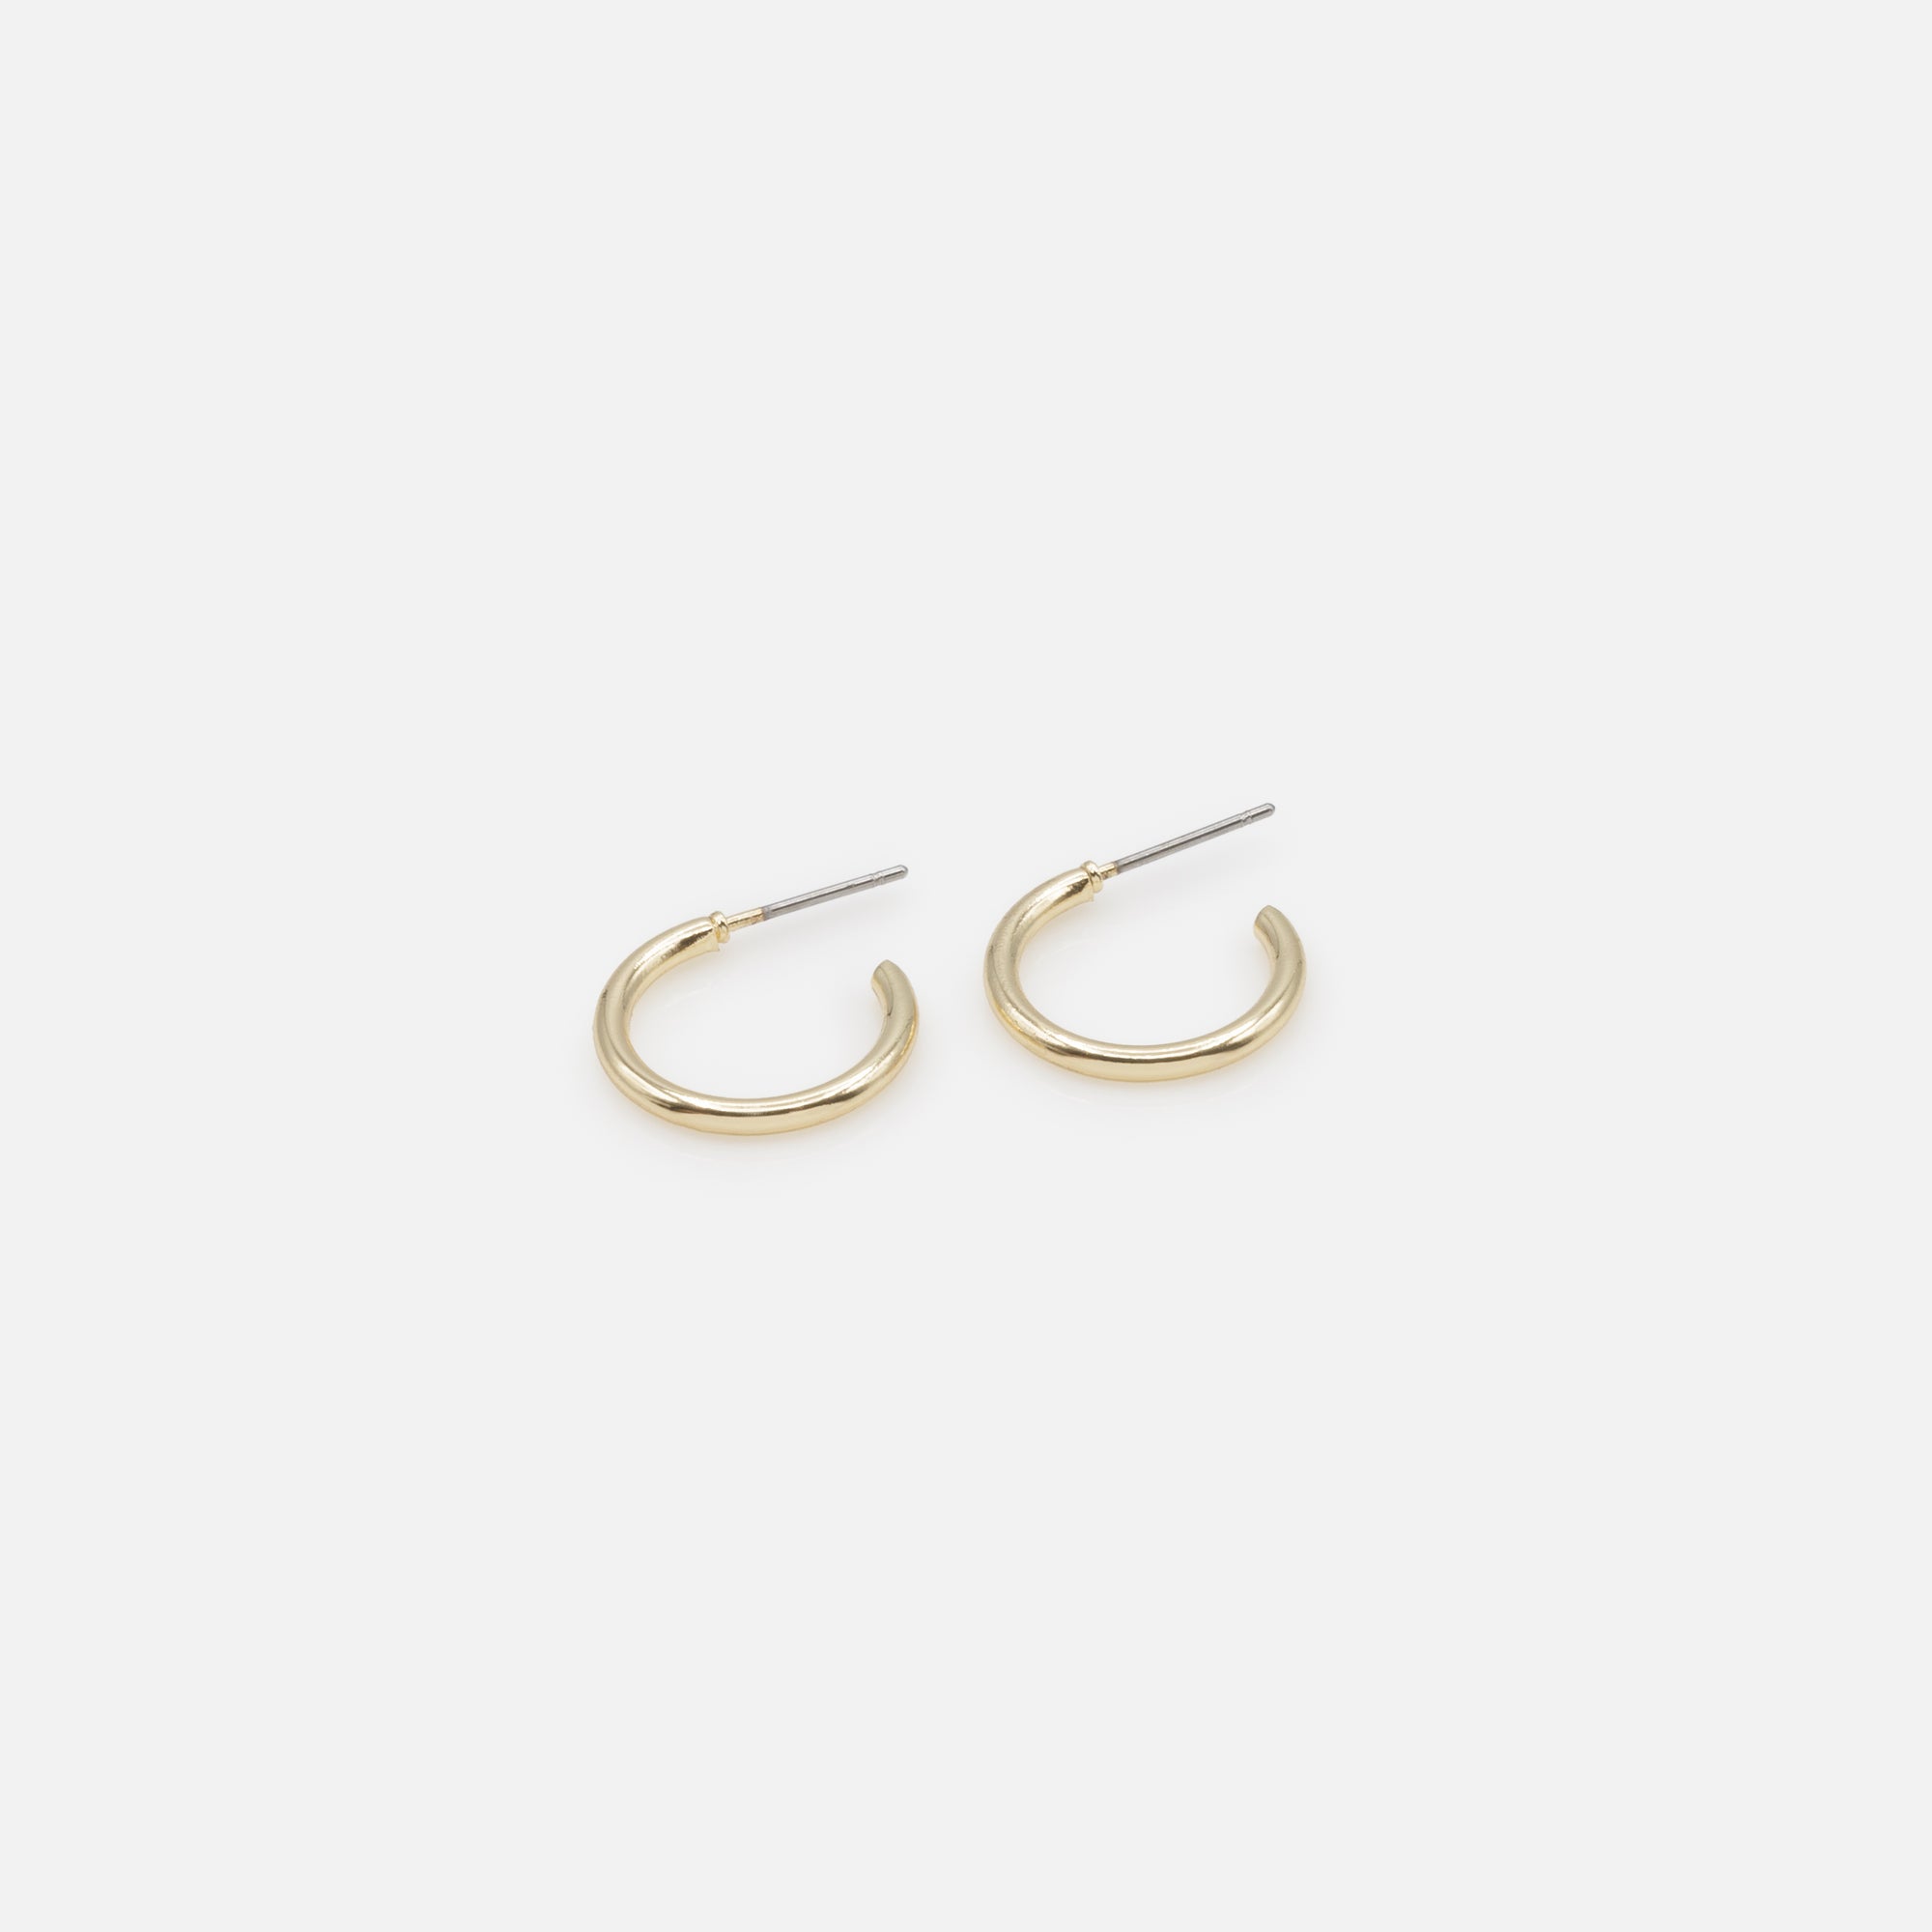 Duo de boucles d'oreilles anneaux dorés simples et à bande blanche